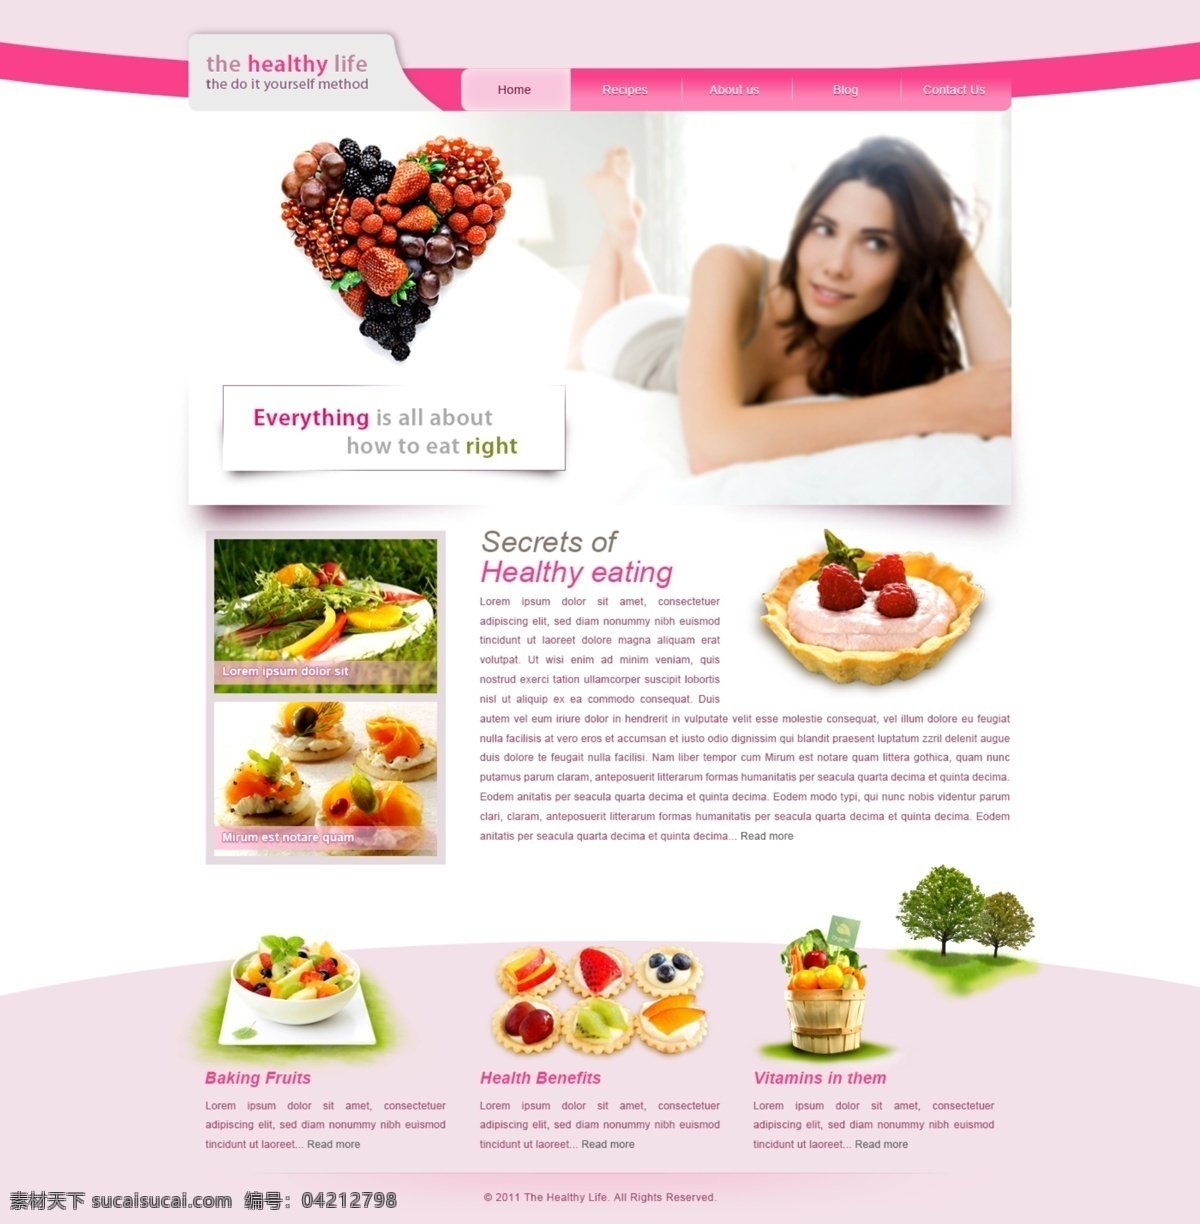 健康美容 网站设计 模板 源文件 分层 网页设计 网页模板 网页界面 界面设计 ui设计 网页版式 版式设计 美容 健康 生活 食品 食物 粉红色 欧美模板 白色